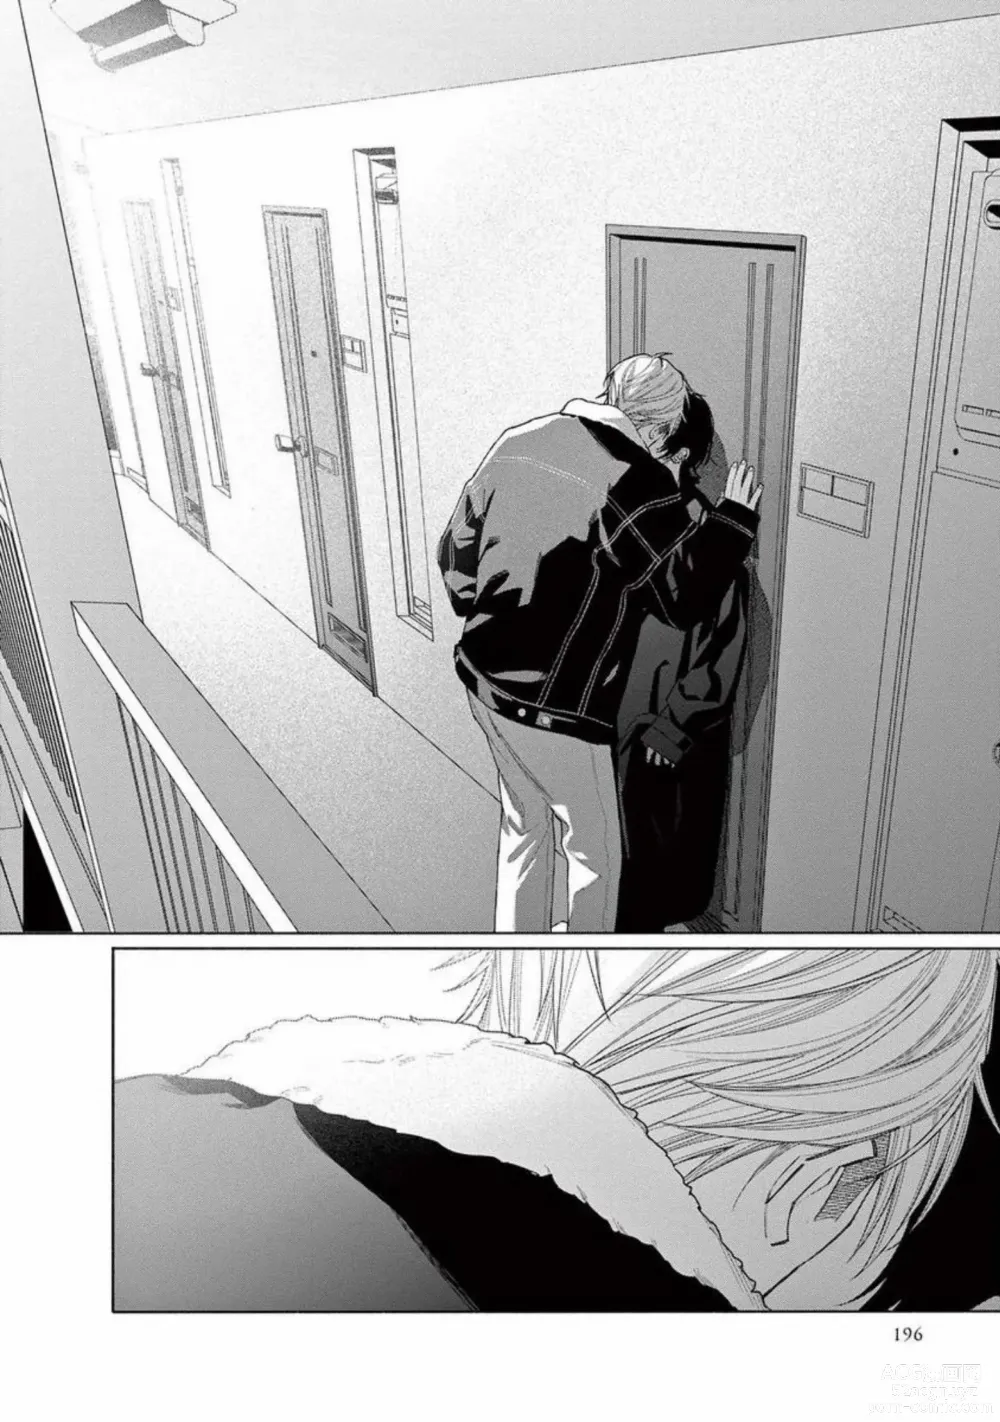 Page 198 of manga Junjou de Nani ga Warui - Whats wrong with being innocent?